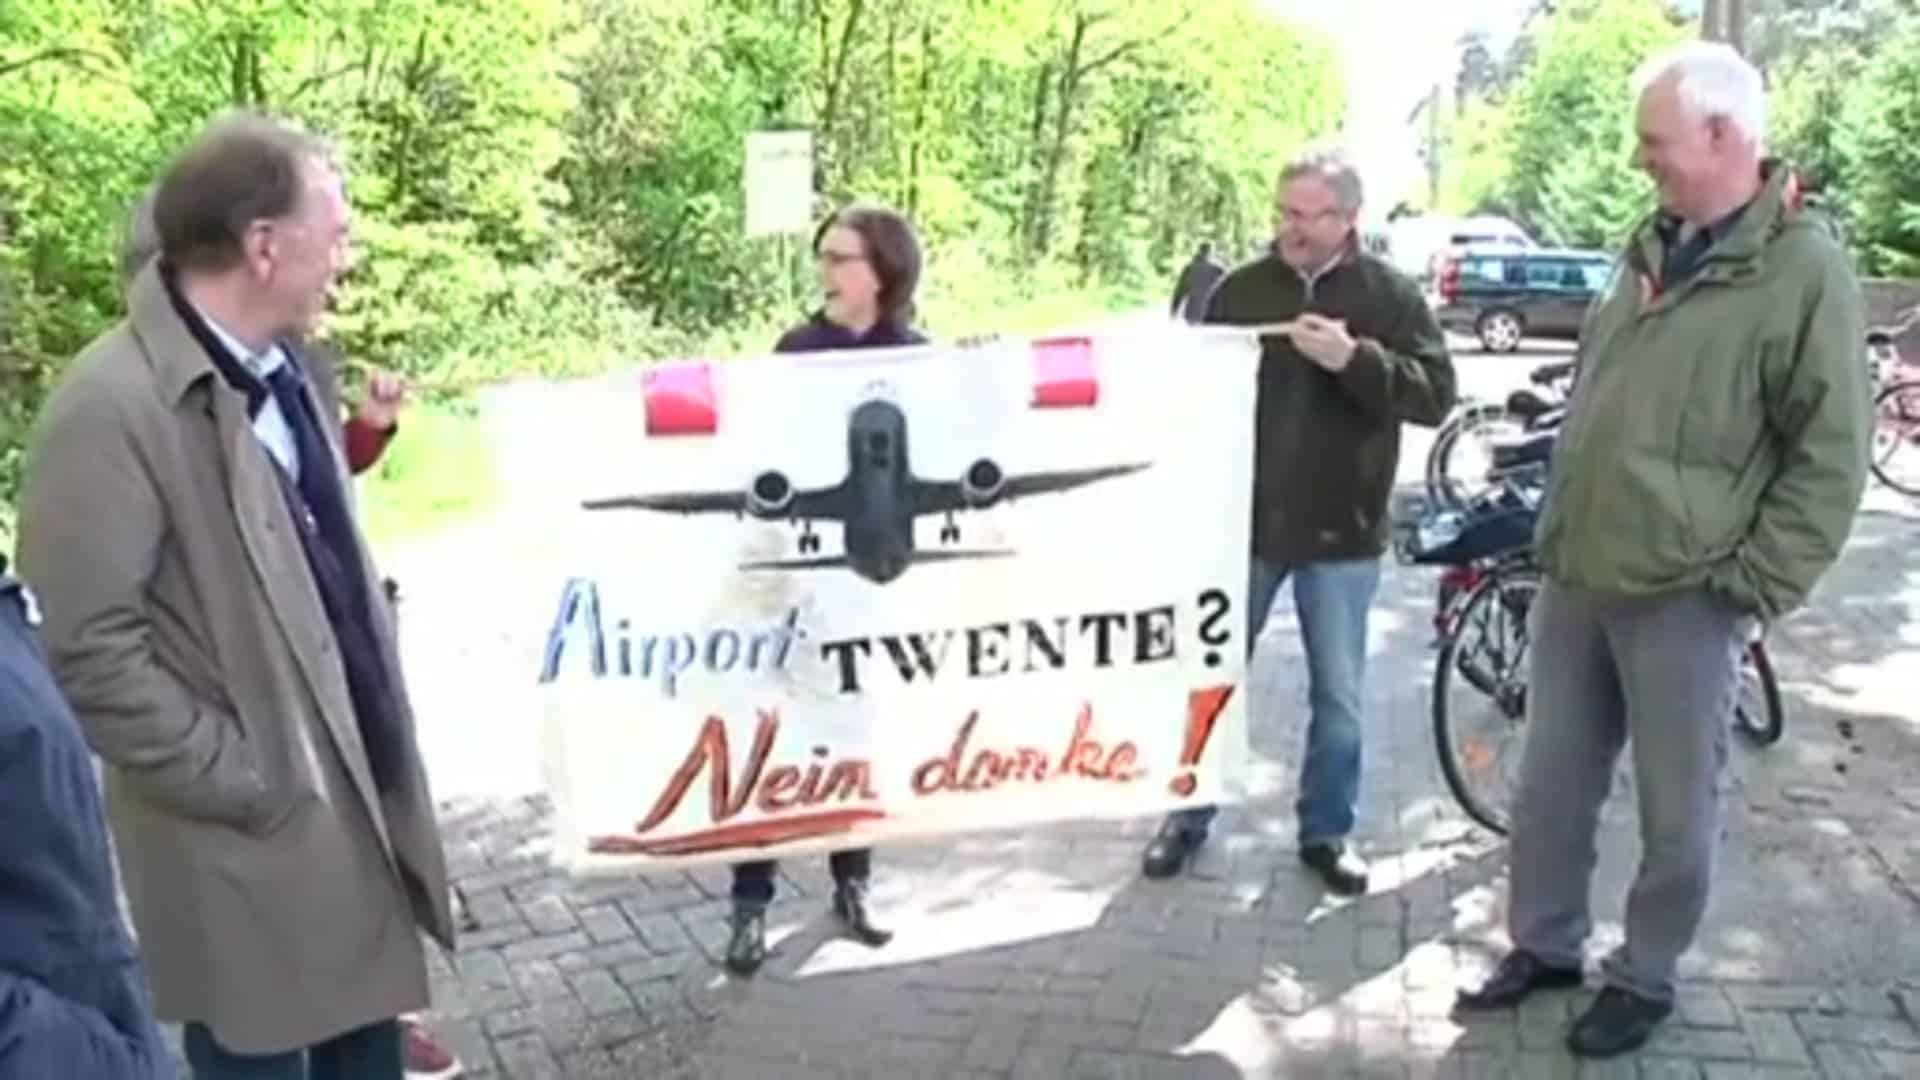 Verkehrsflughafen Twente gecancelt